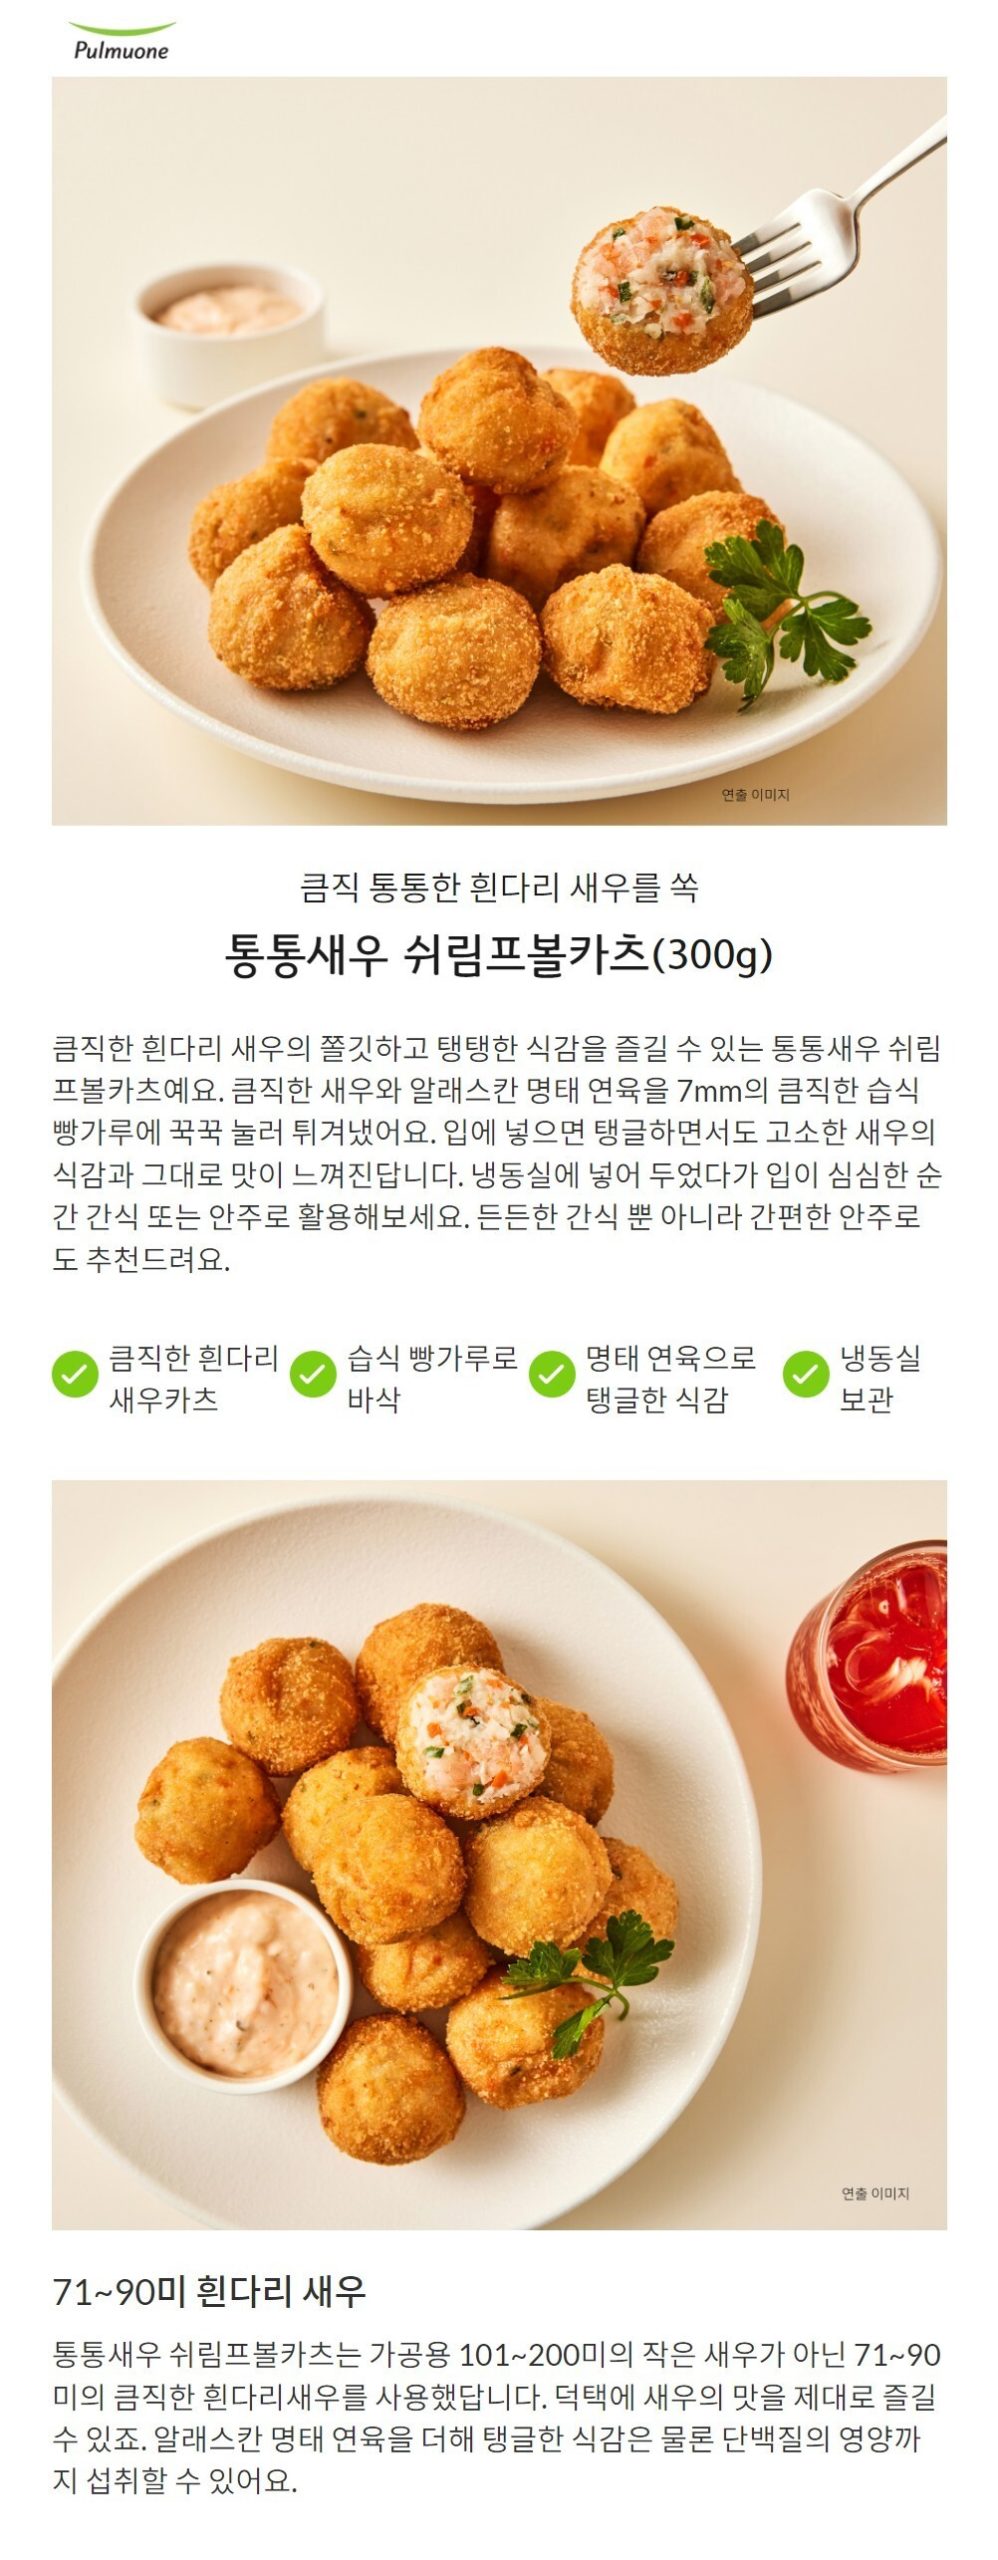 韓國食品-[Pulmuone] Fried Shrimp Ball 300g